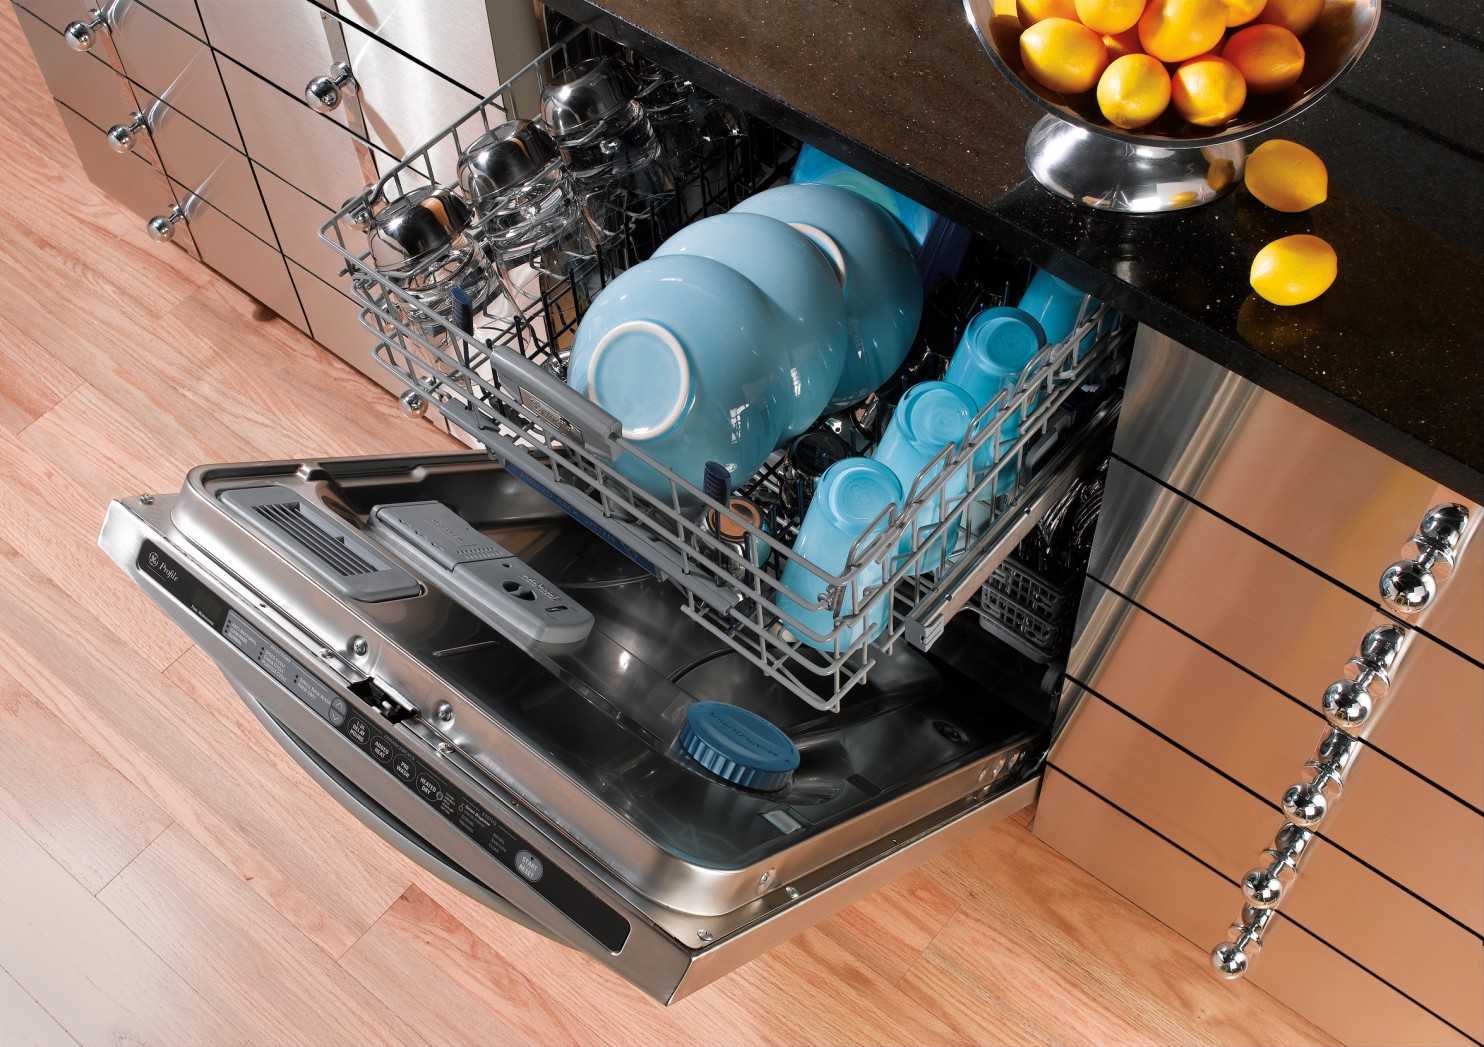 Какие посудомоечные машины хорошие по качеству. Для посудомоечных машин. Посудомойка. Посуда в посудомоечной машине. Посудомоечная машина настольная.